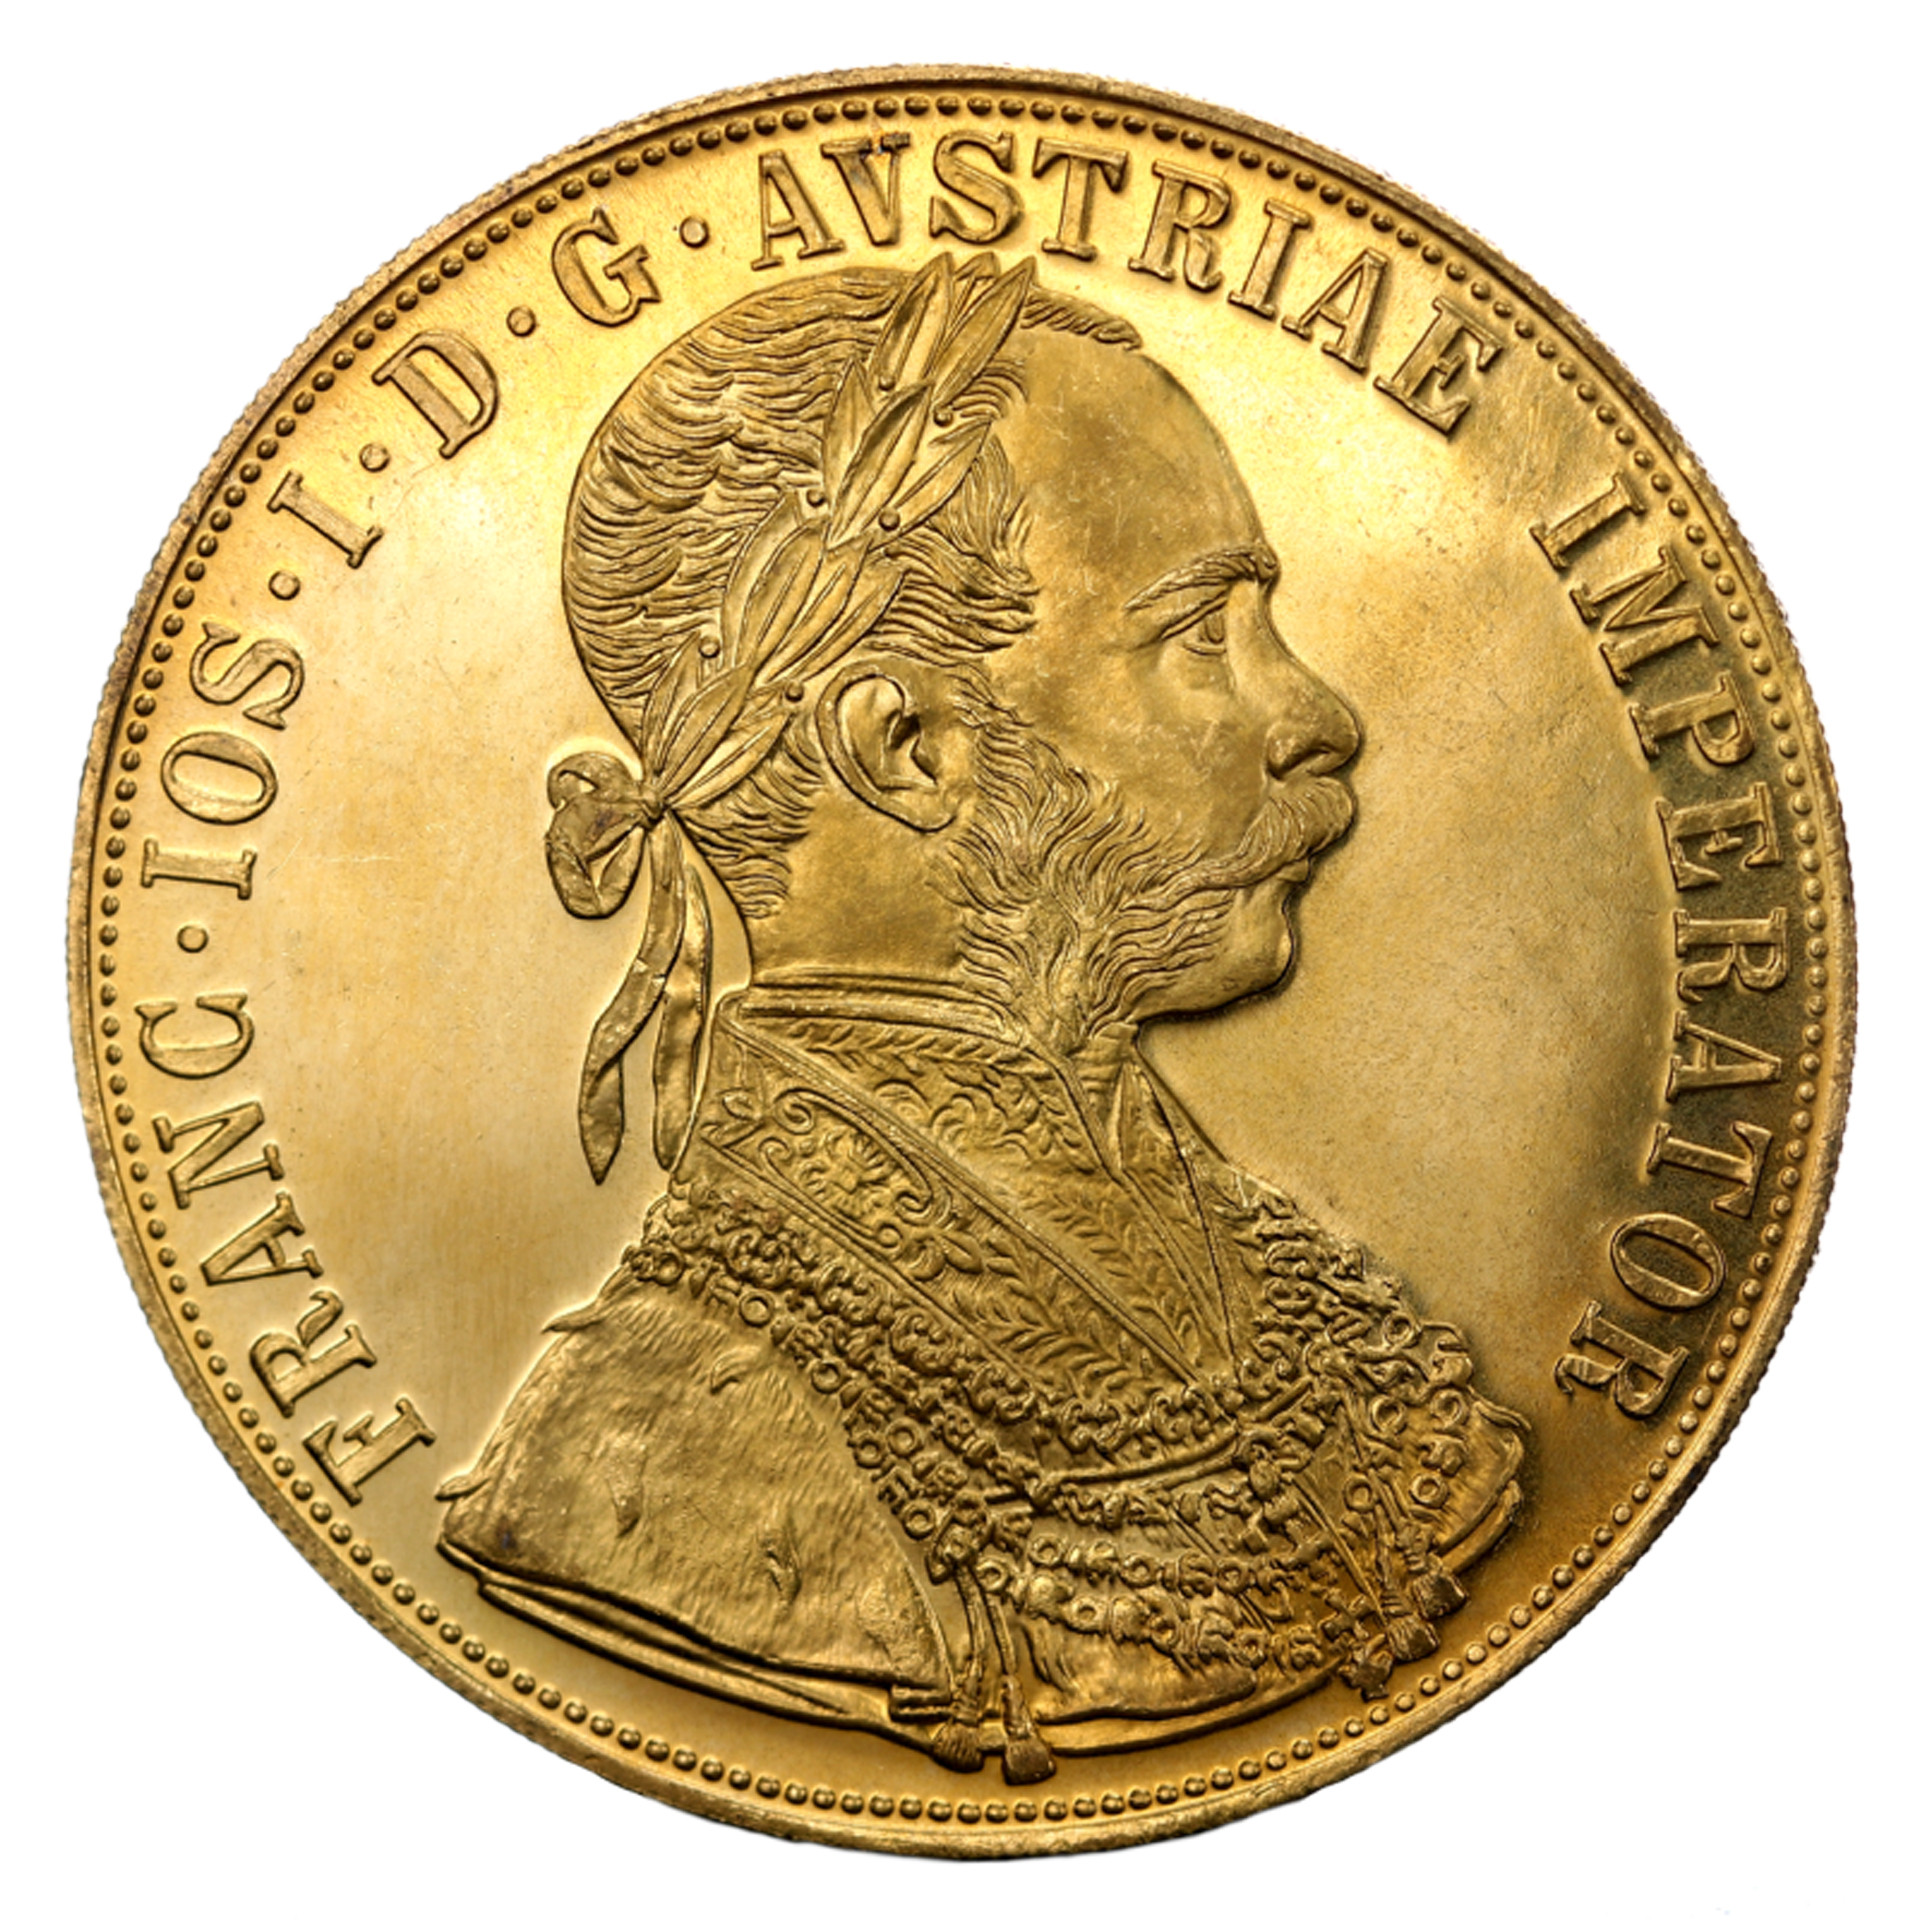 4-ducats-gold-coin-europa-bullion